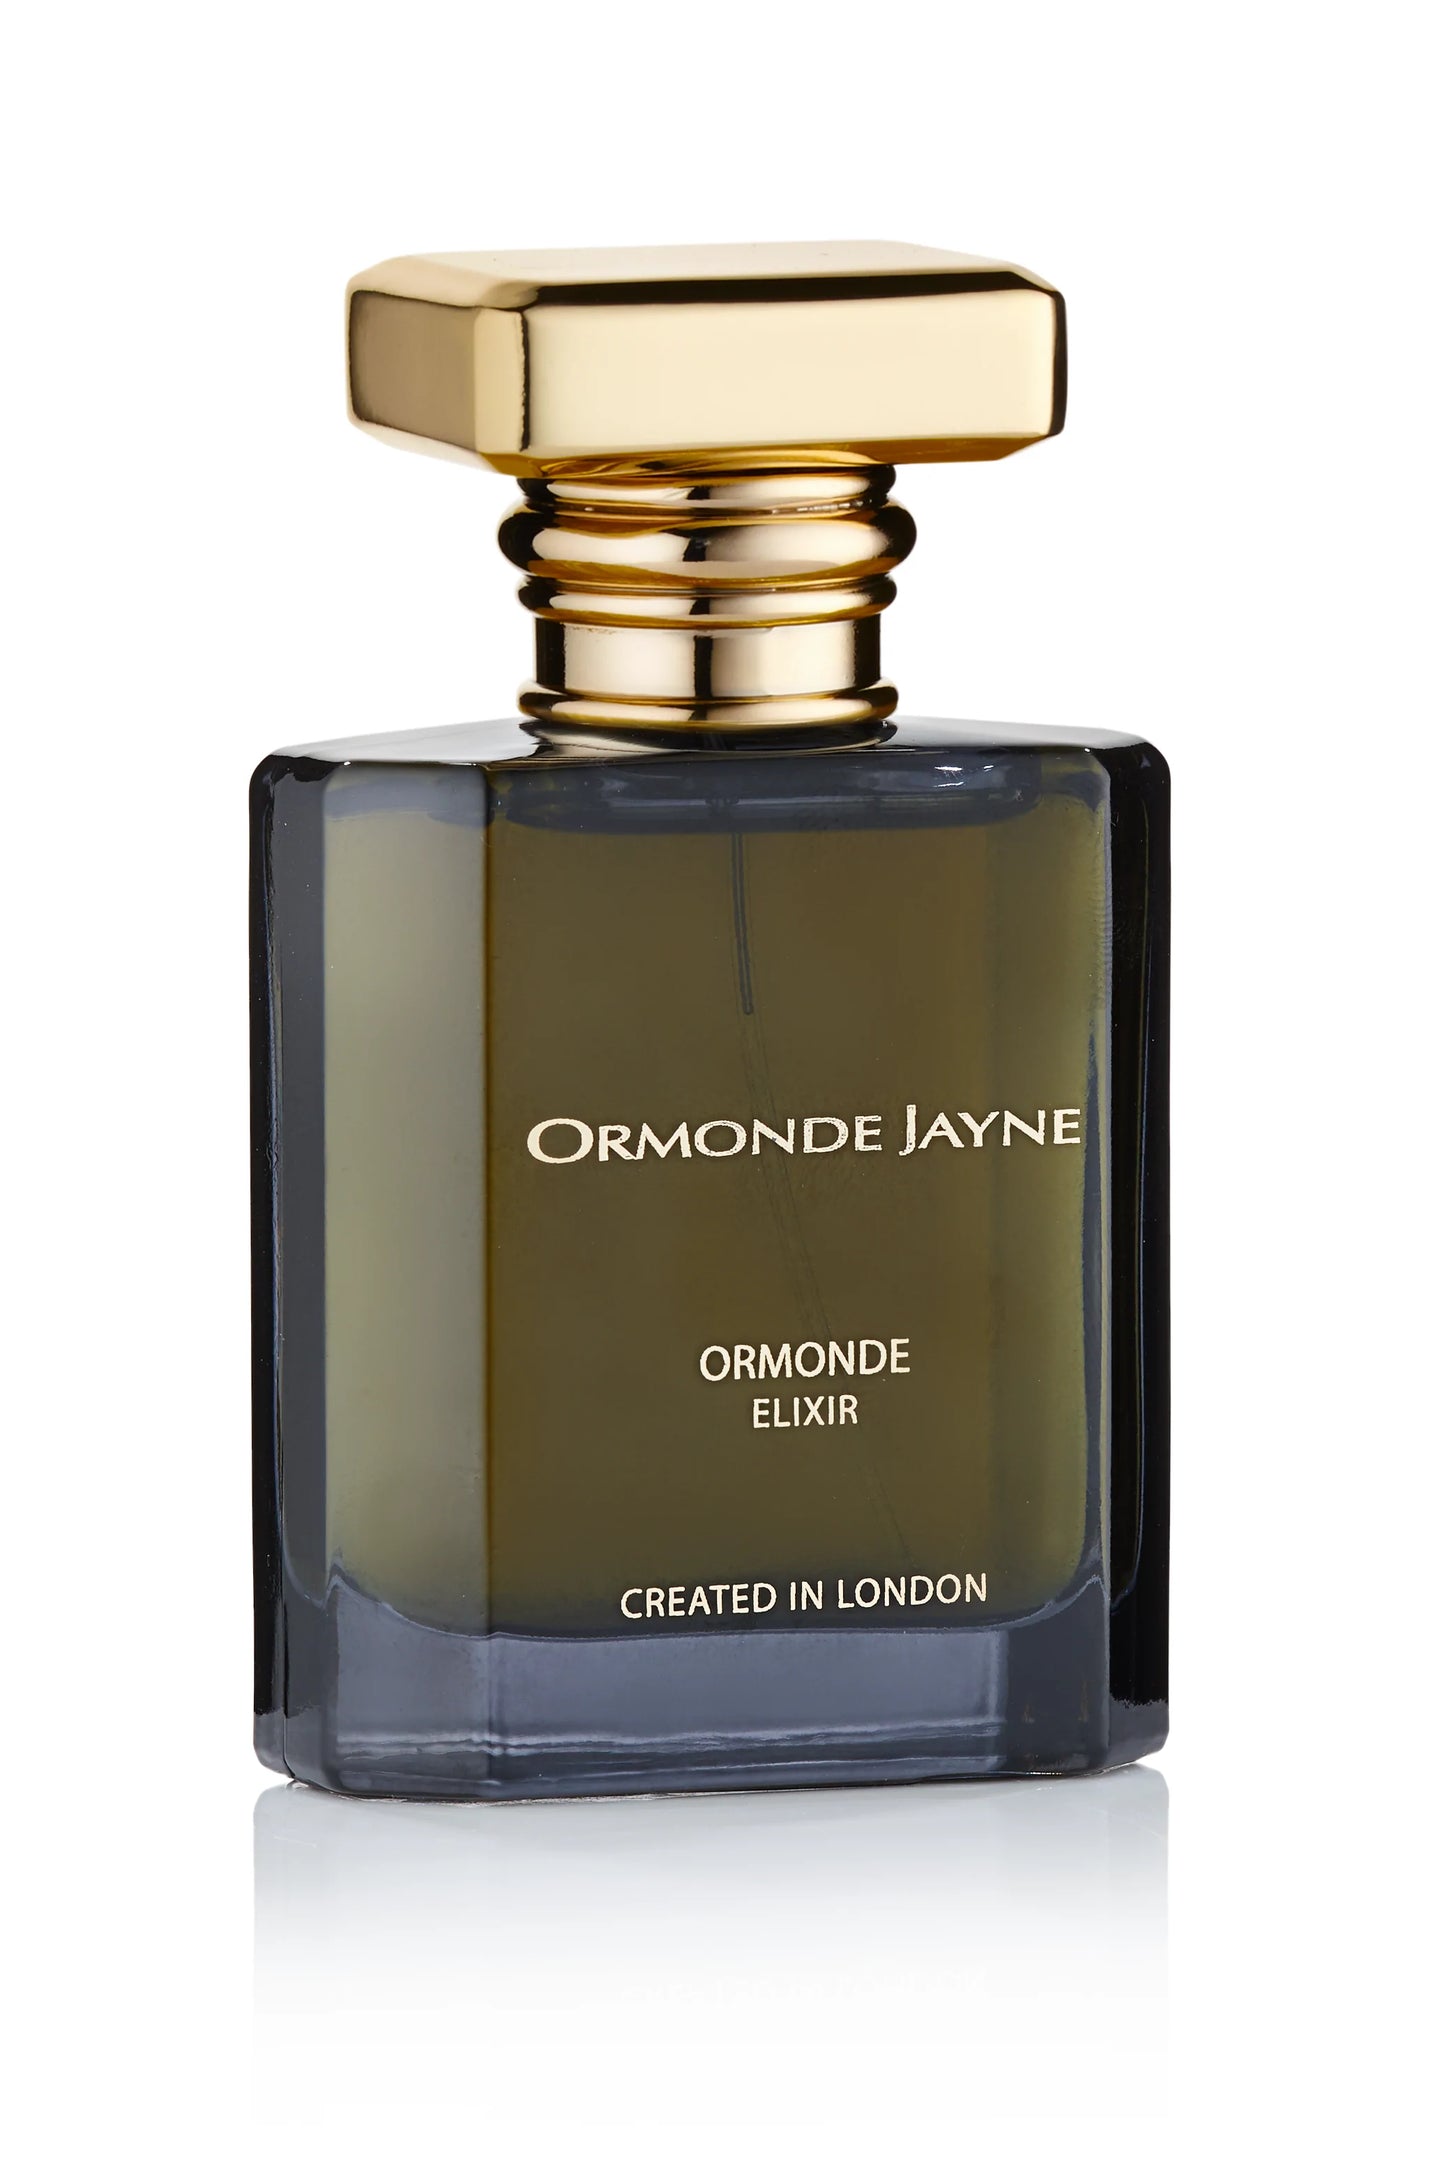 Ormonde Jayne Ormonde Eliksir 2 ml 0.06 fl. oz uradni vzorec dišave